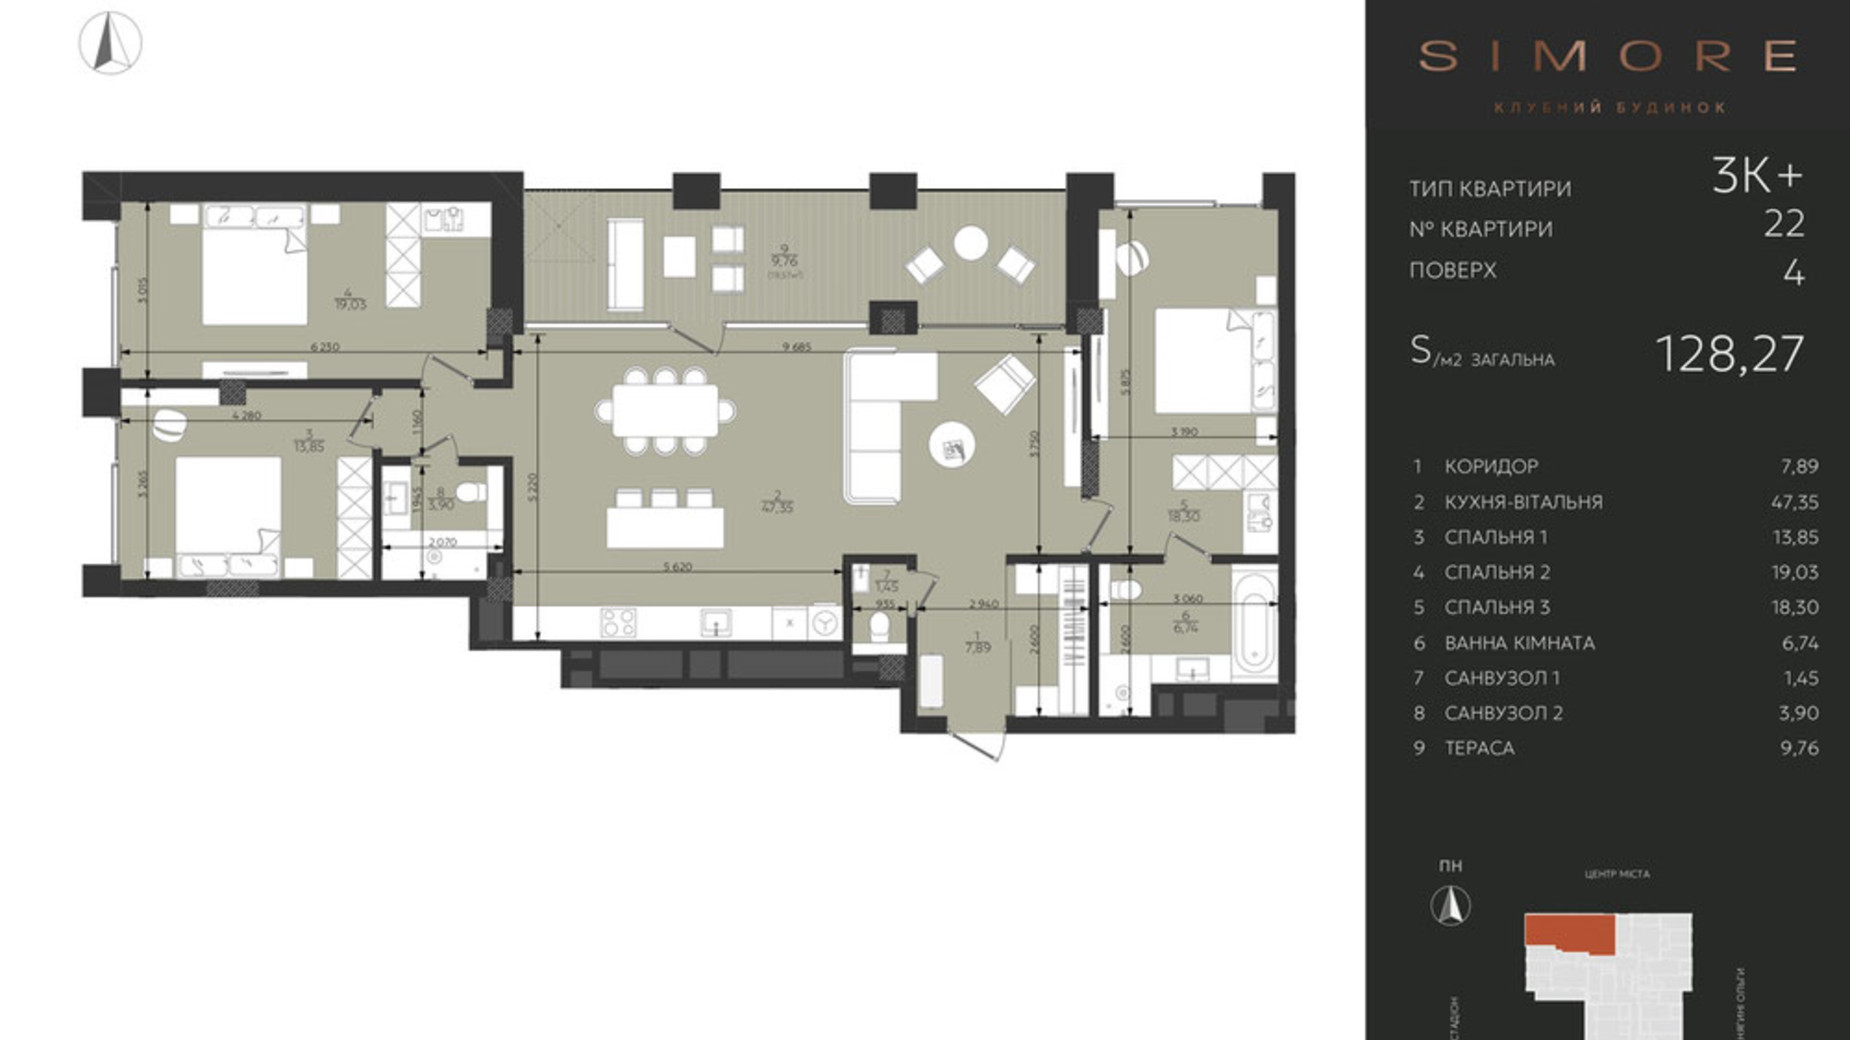 Планировка 3-комнатной квартиры в Клубный дом Simore 128.27 м², фото 694203